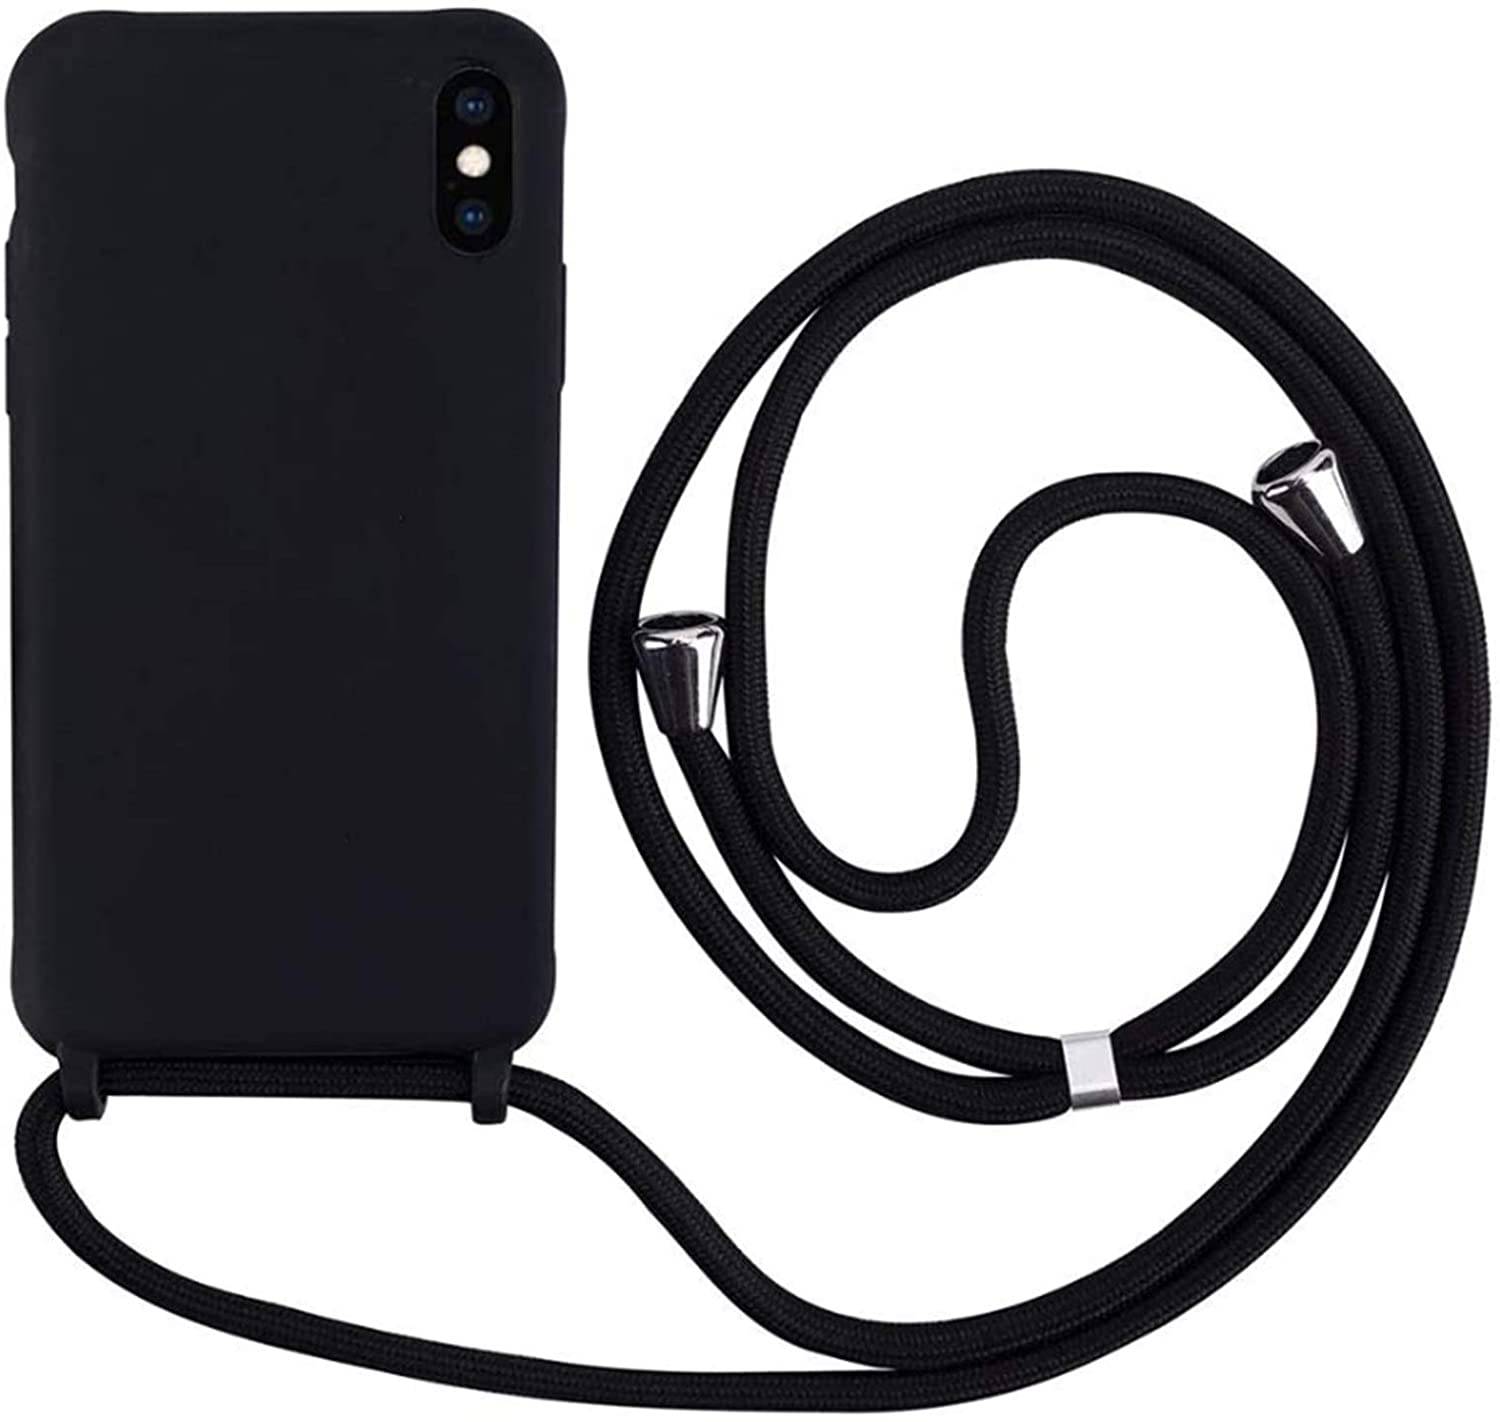 Coque avec cordon pour iPhone XS Max - Protection en Silicone Case - Coque tour de cou, bandoulière iPhone - Coques&Co